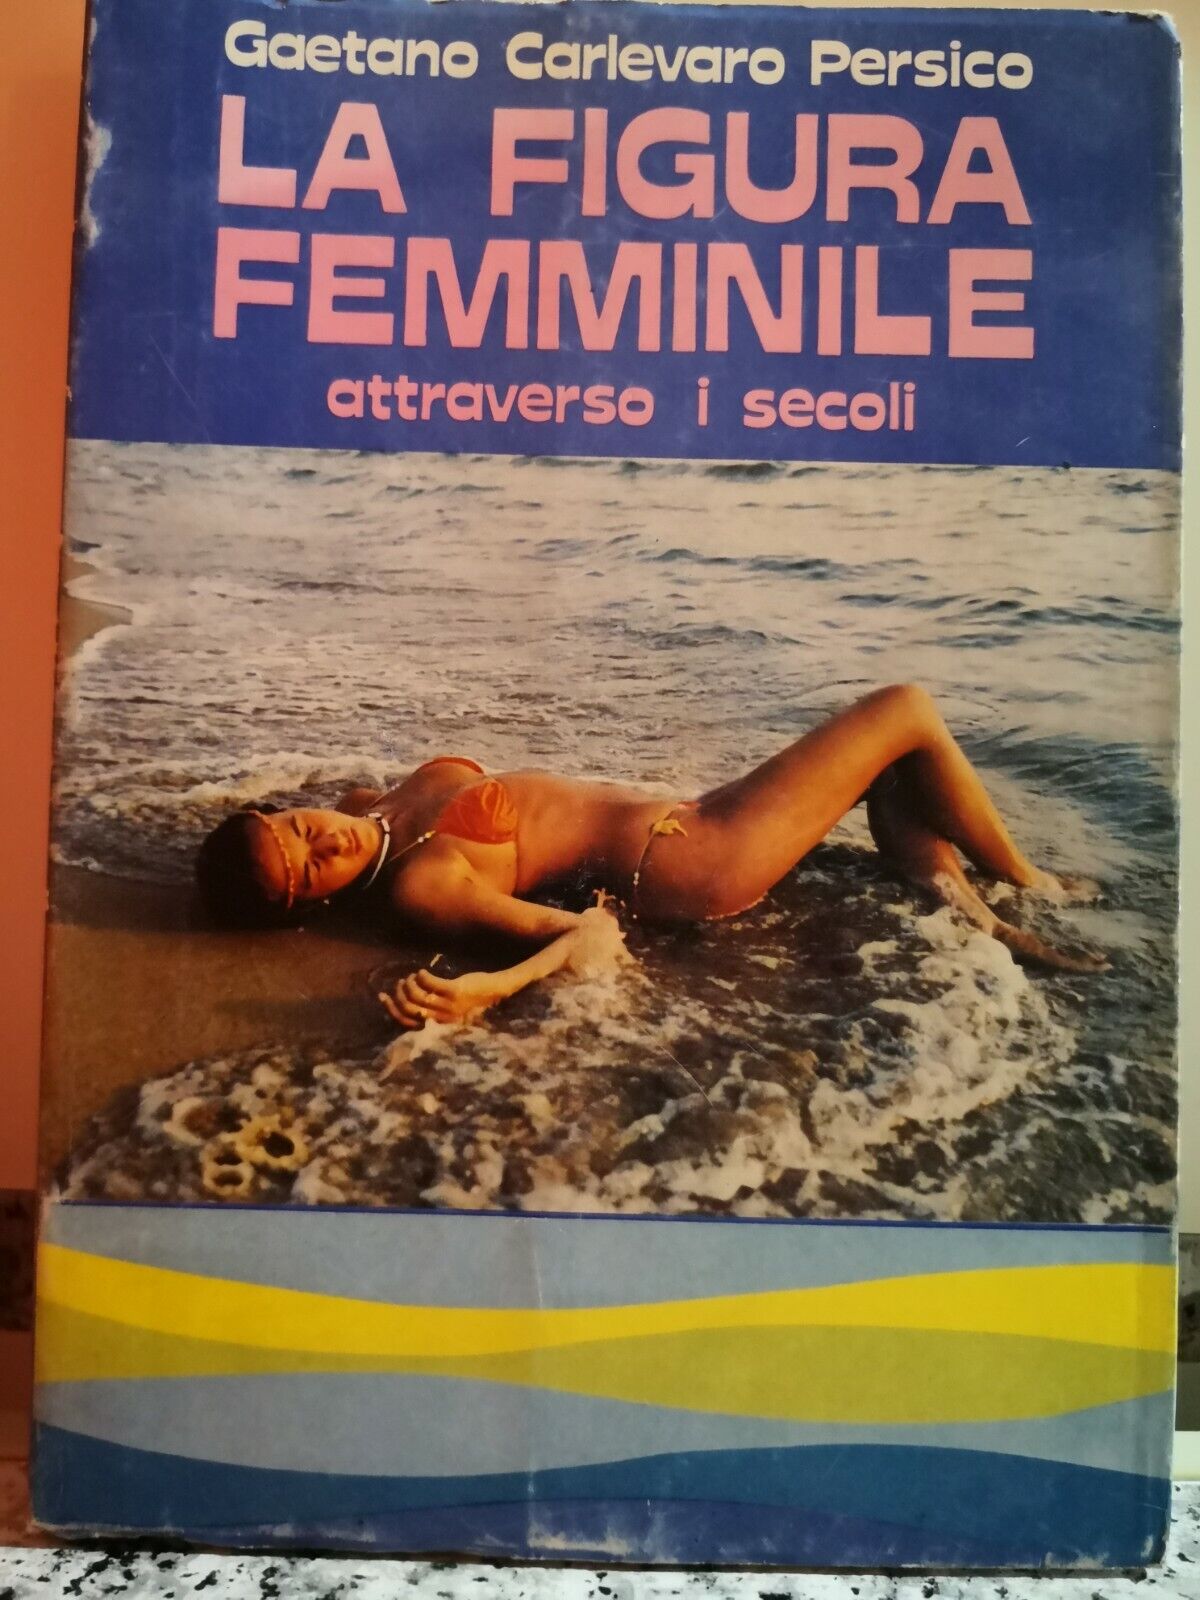  La figura femminile  di Gaetano Carlevaro Persico,  1981,  Pozzetto-F